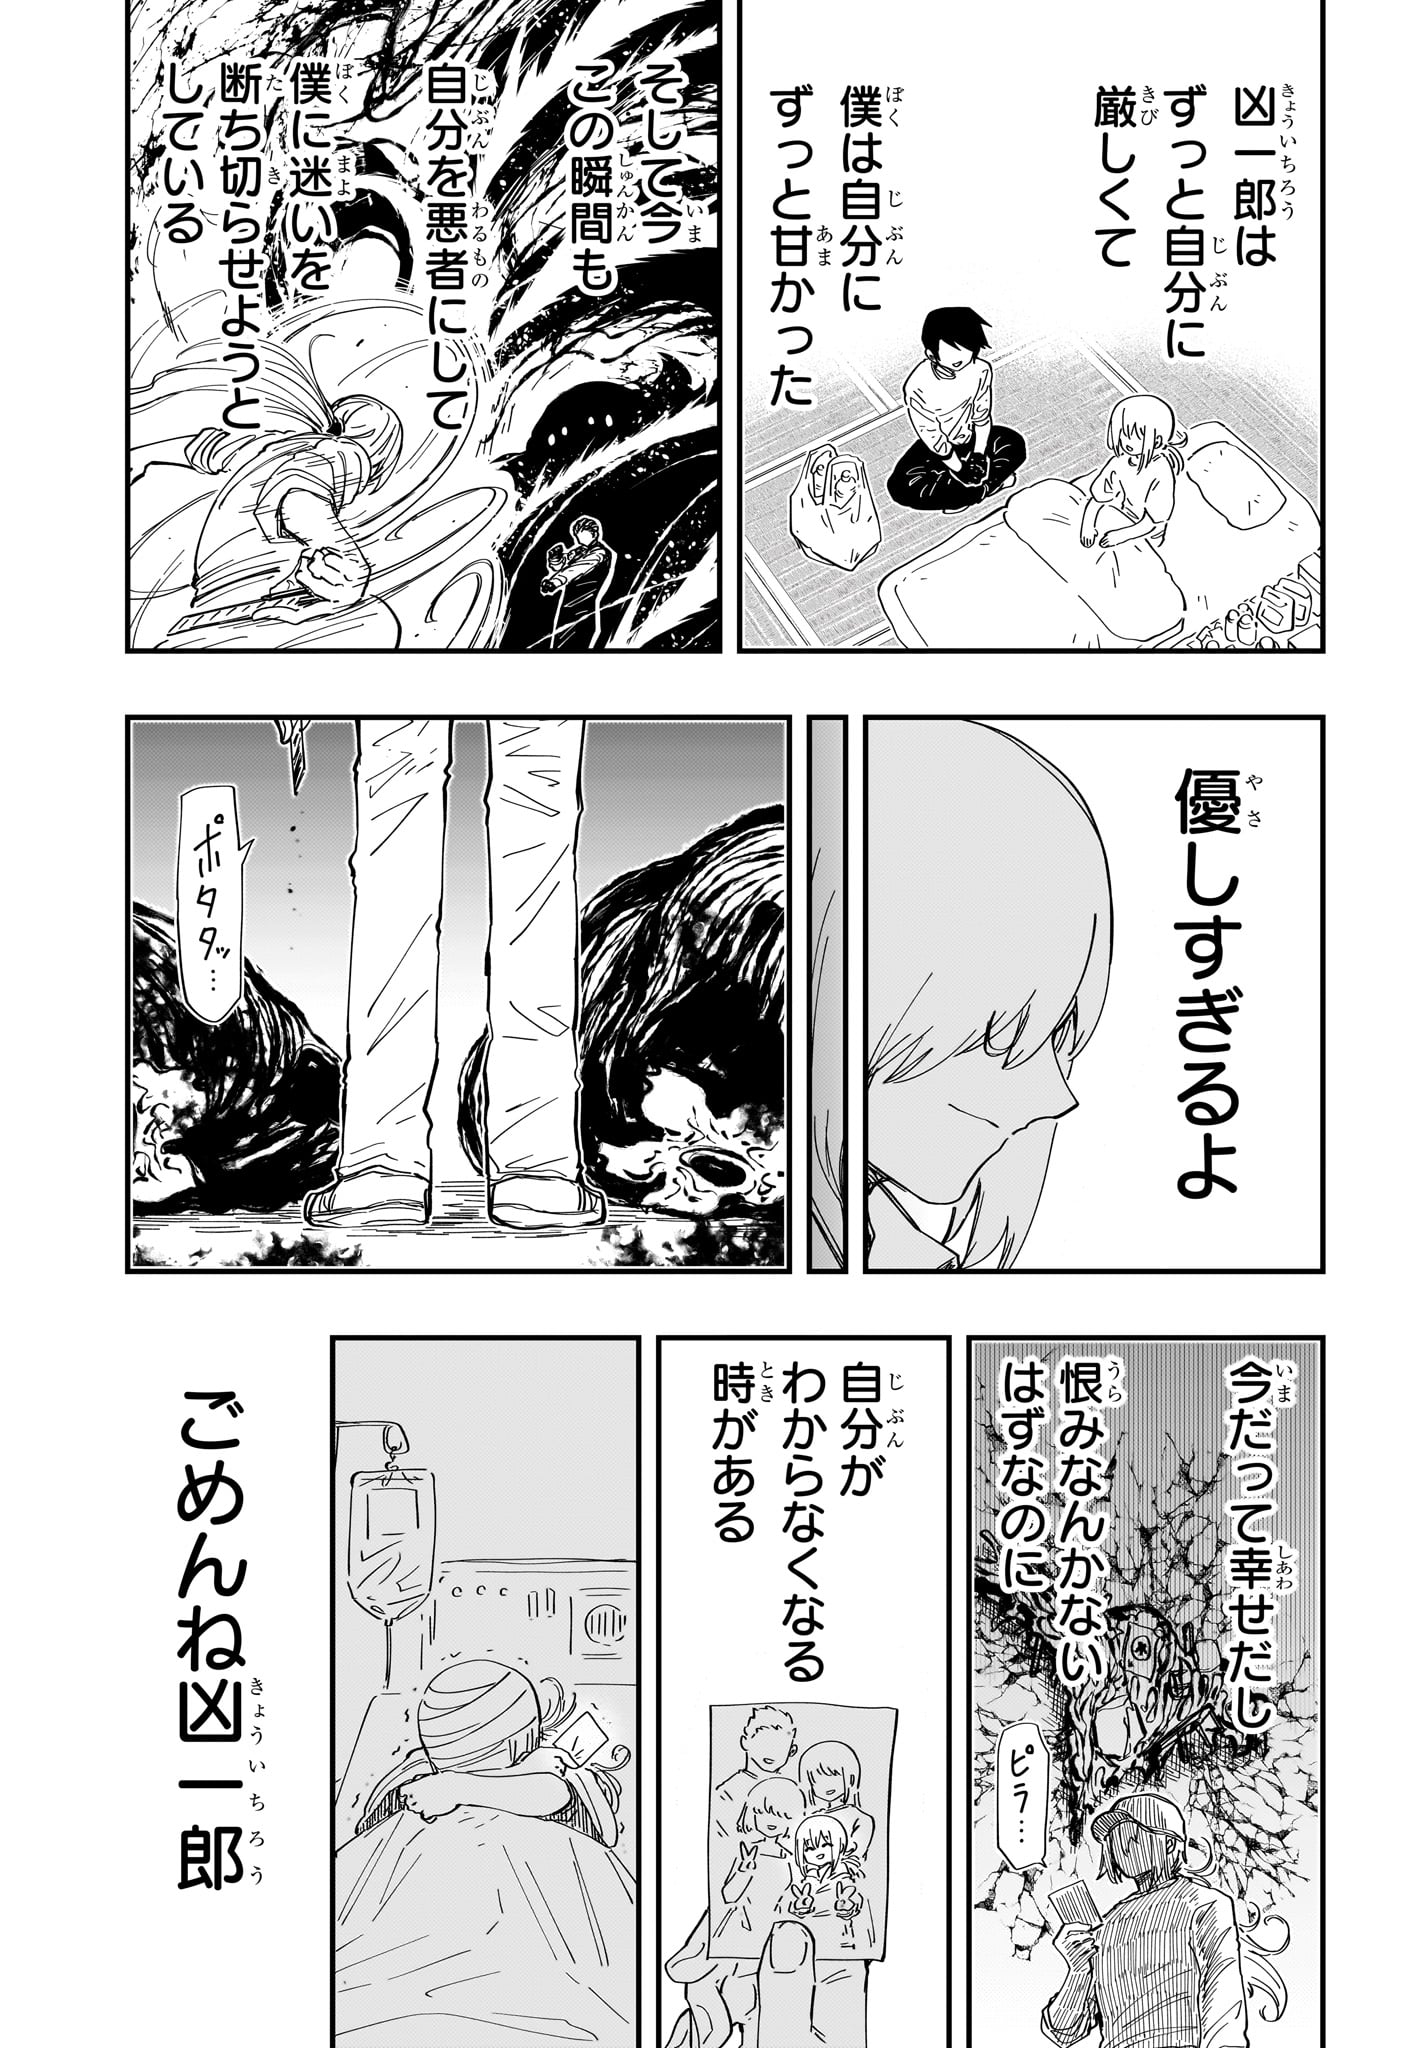 Yozakura-san Chi no Daisakusen - Chapter 228 - Page 13